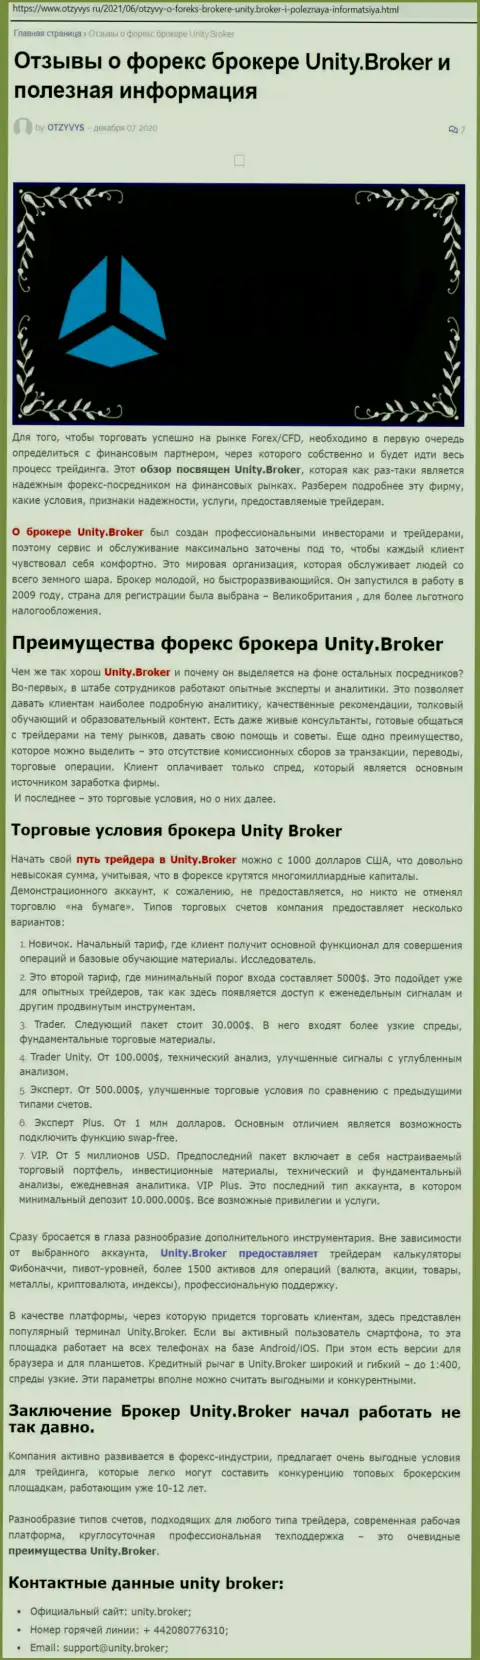 Статья о Форекс-дилере Unity Broker на сайте Отзывус Ру